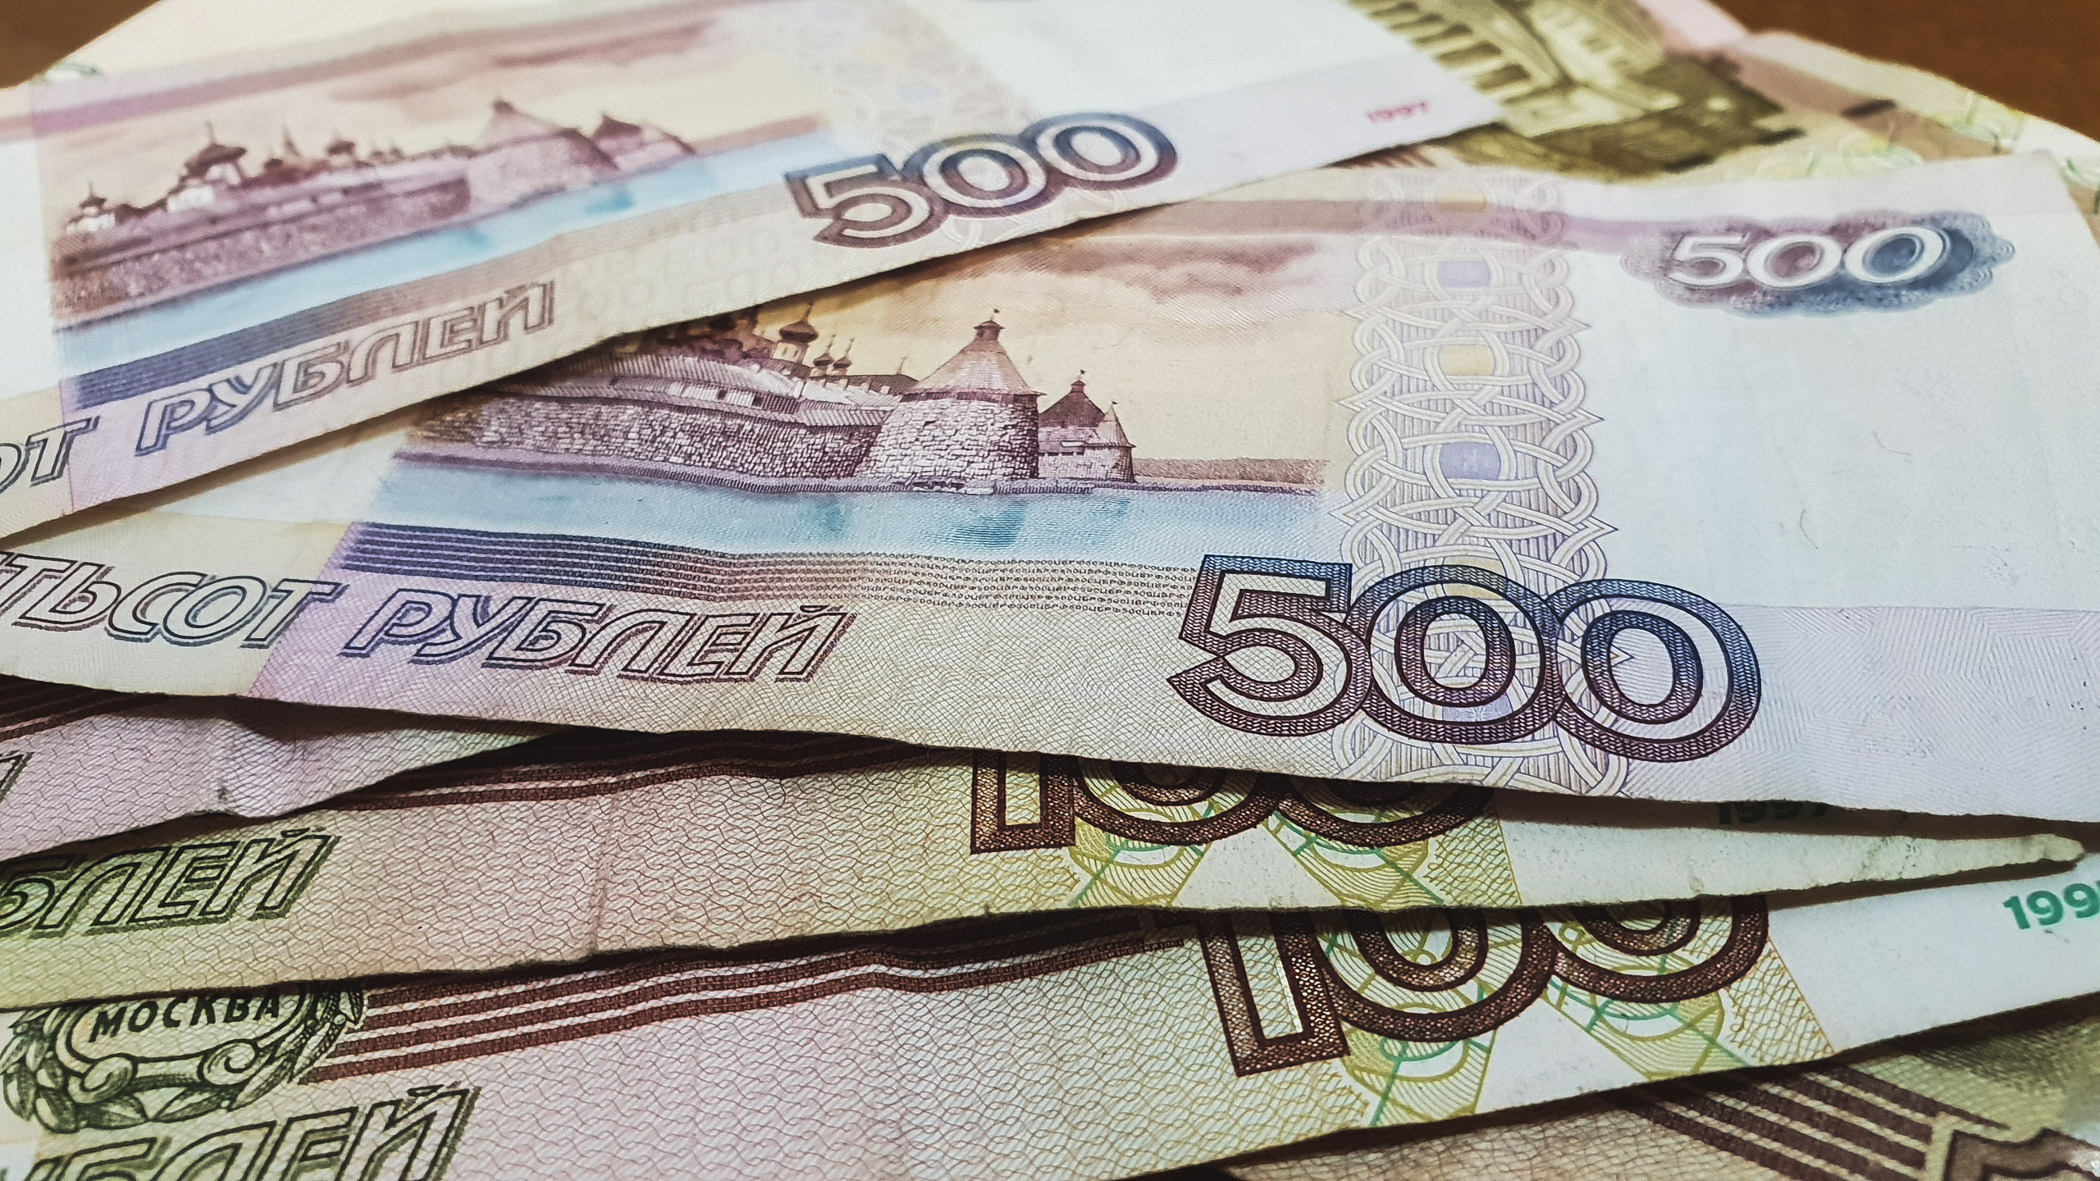 Пенсионер из ХМАО потерял более 53 тысяч рублей в надежде вернуть проигранные деньги